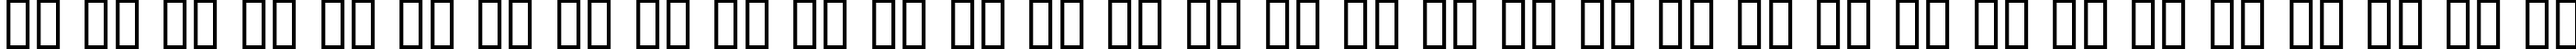 Пример написания русского алфавита шрифтом Dumbledor 3 Italic